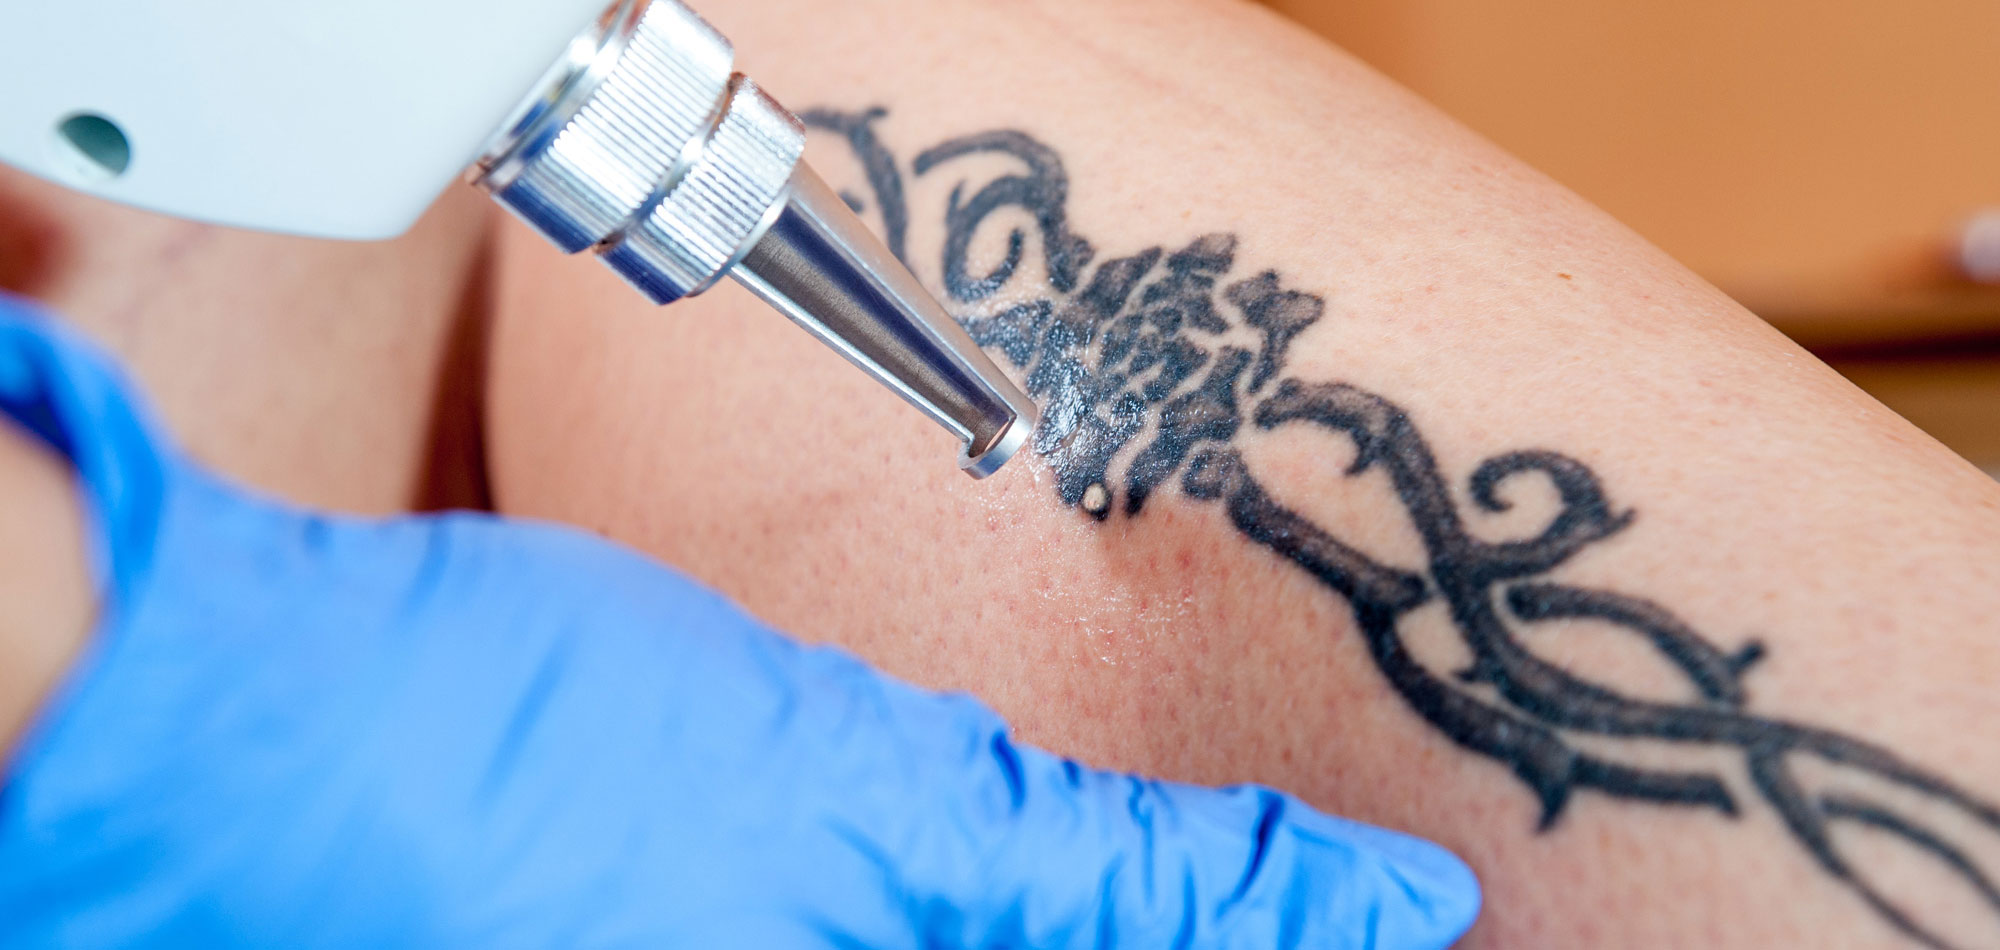 Tattooentfernung mit modernster Lasertechnologie